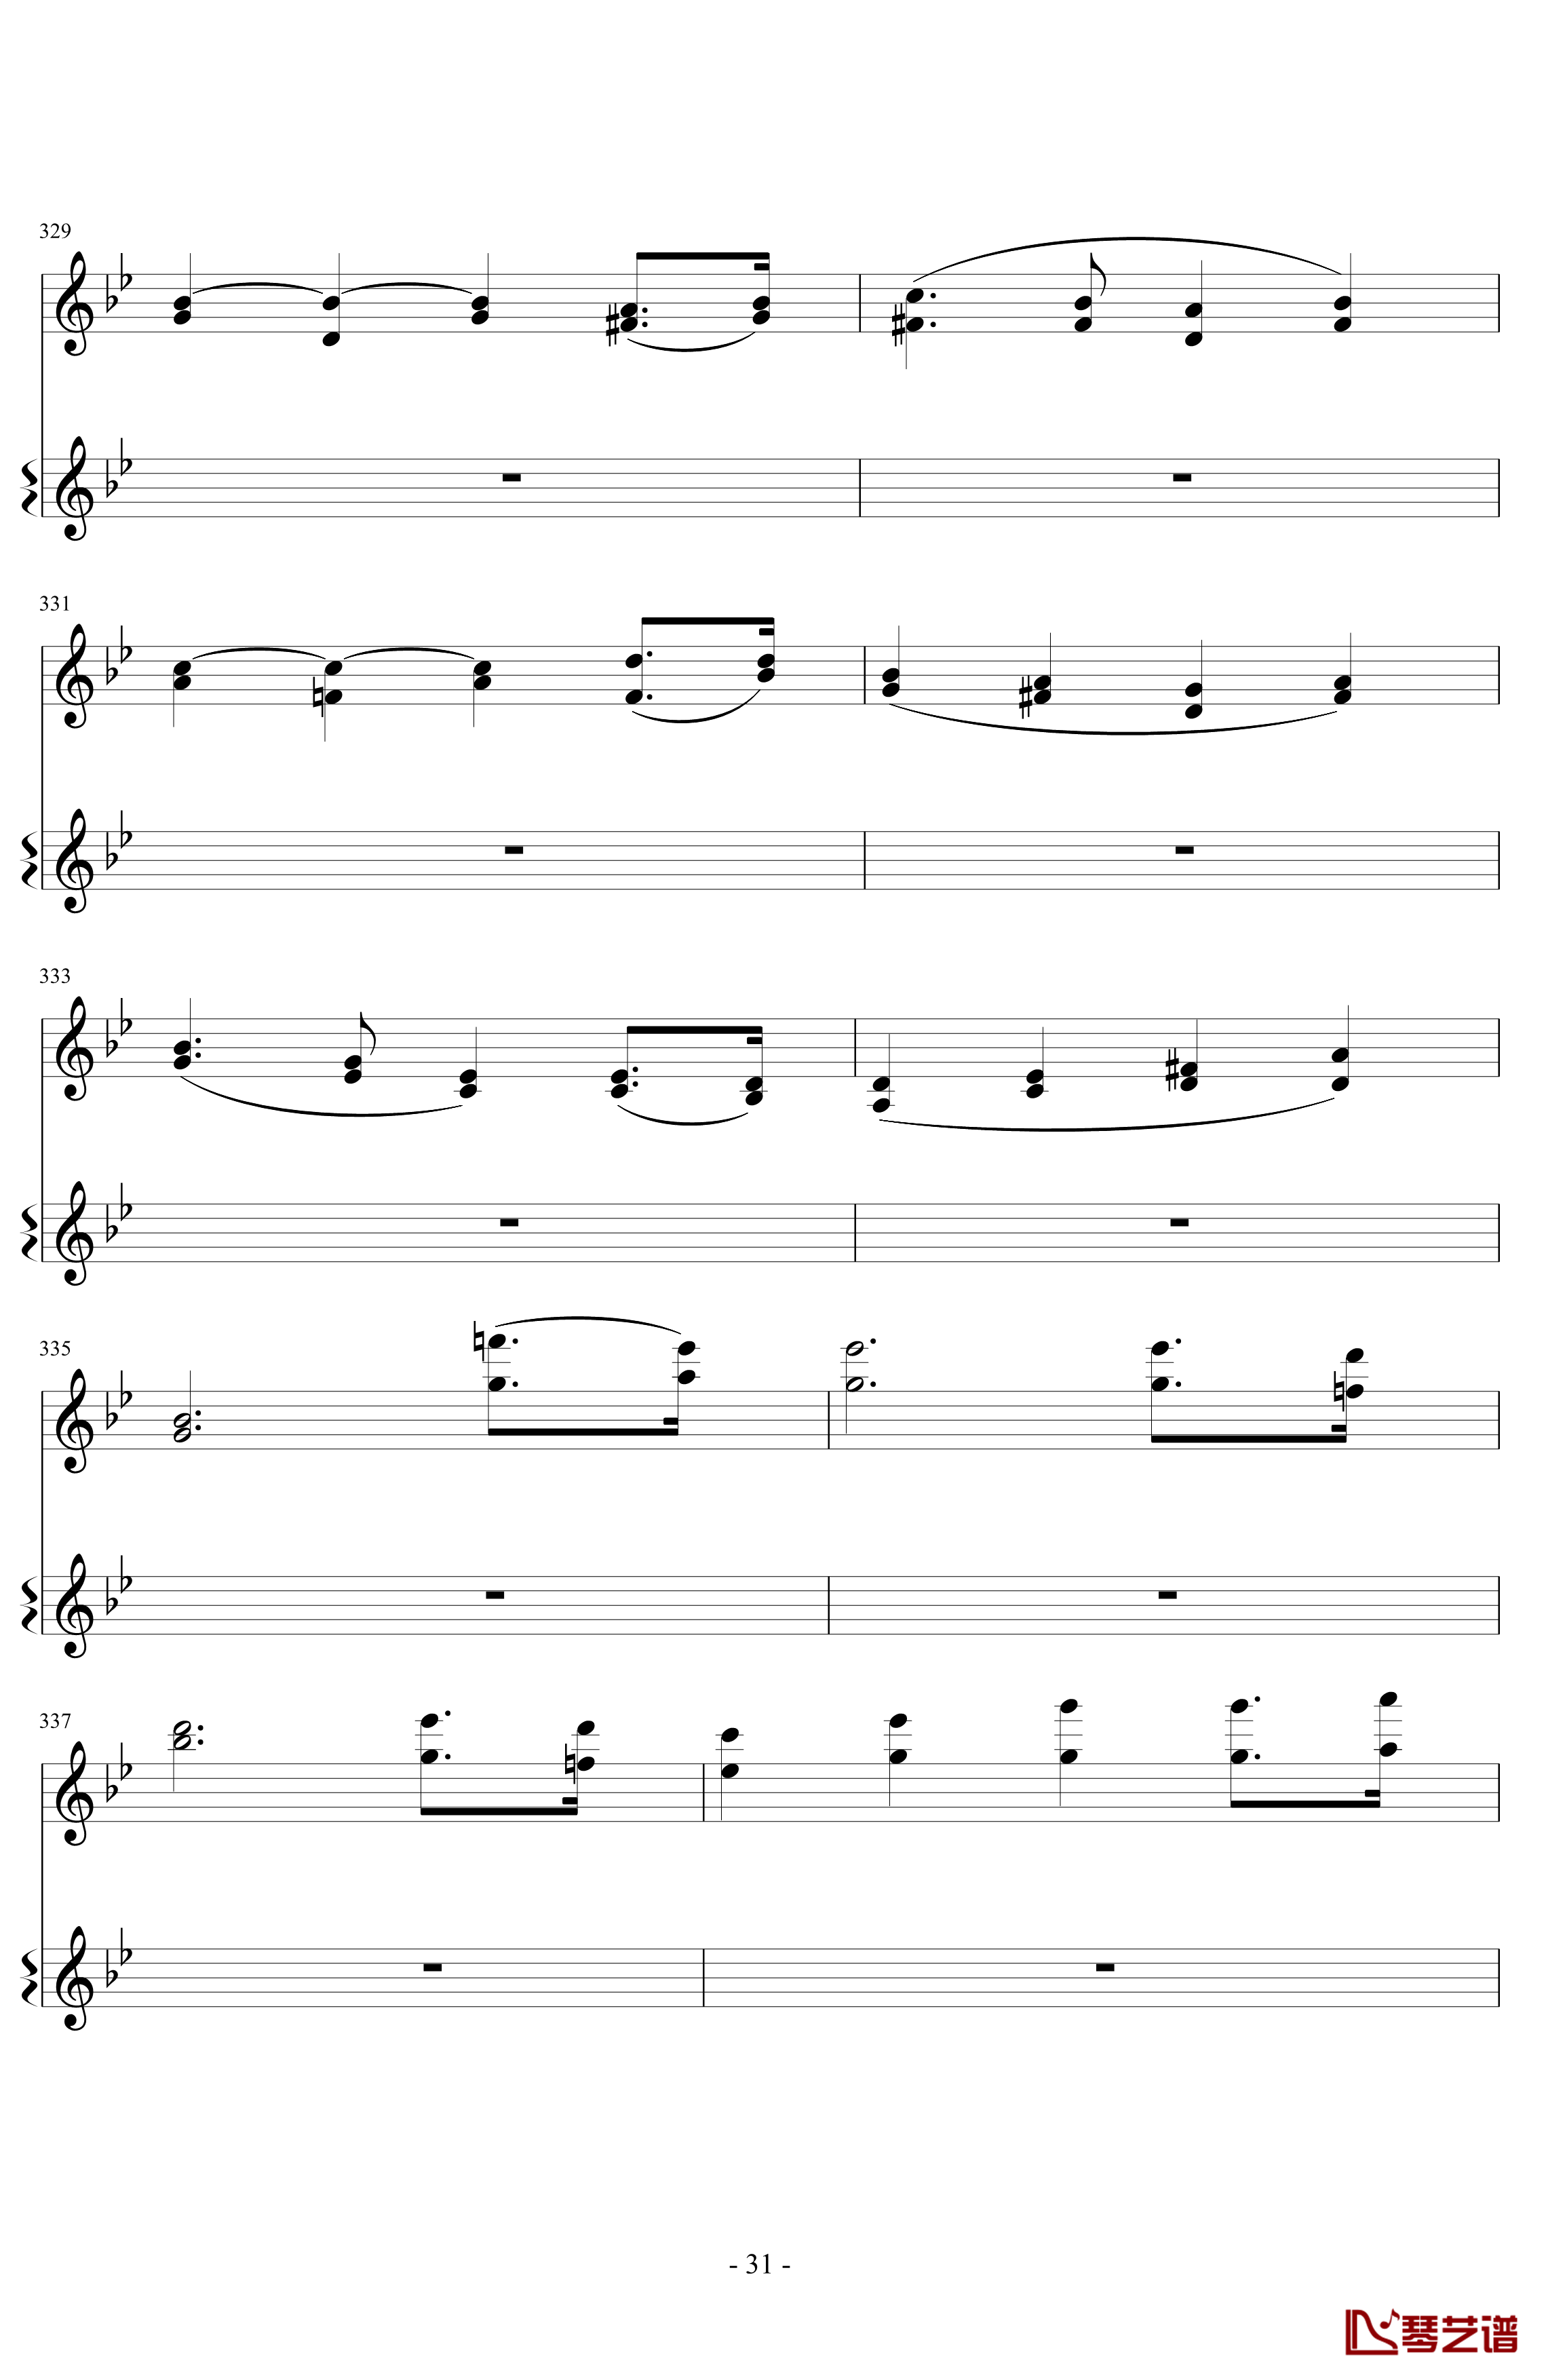 意大利国歌变奏曲钢琴谱-DXF31